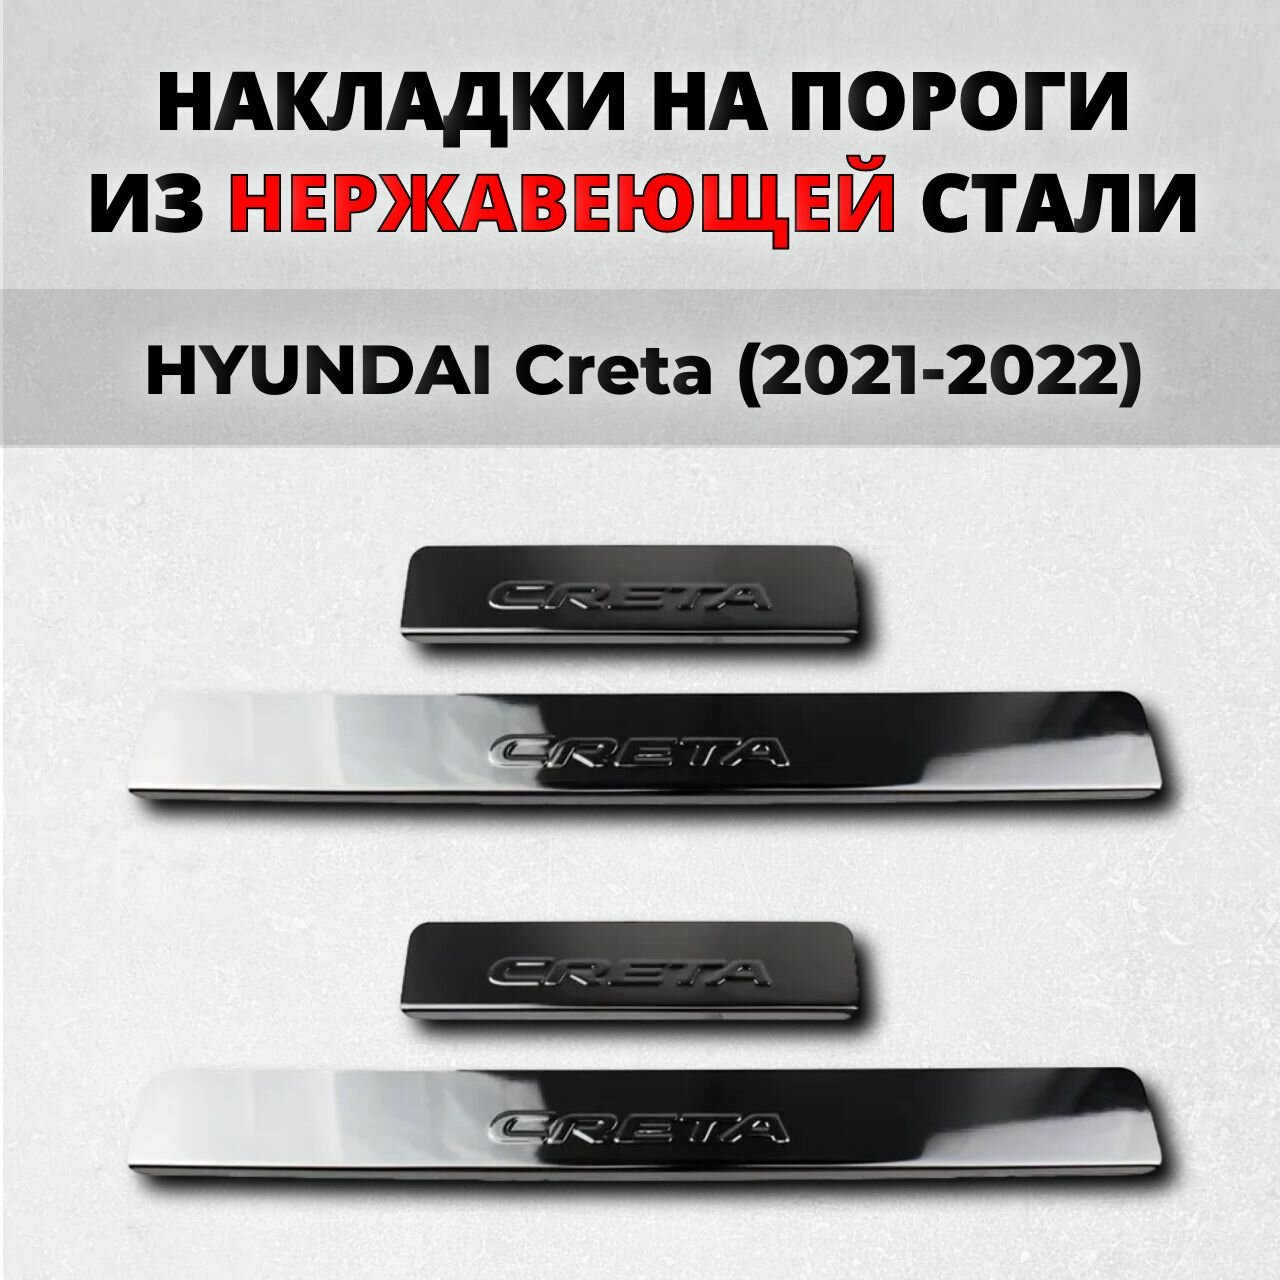 Накладки на пороги Хендай Крета 2021-2022 (премиум) из нержавеющей стали HYUNDAI Creta Грета